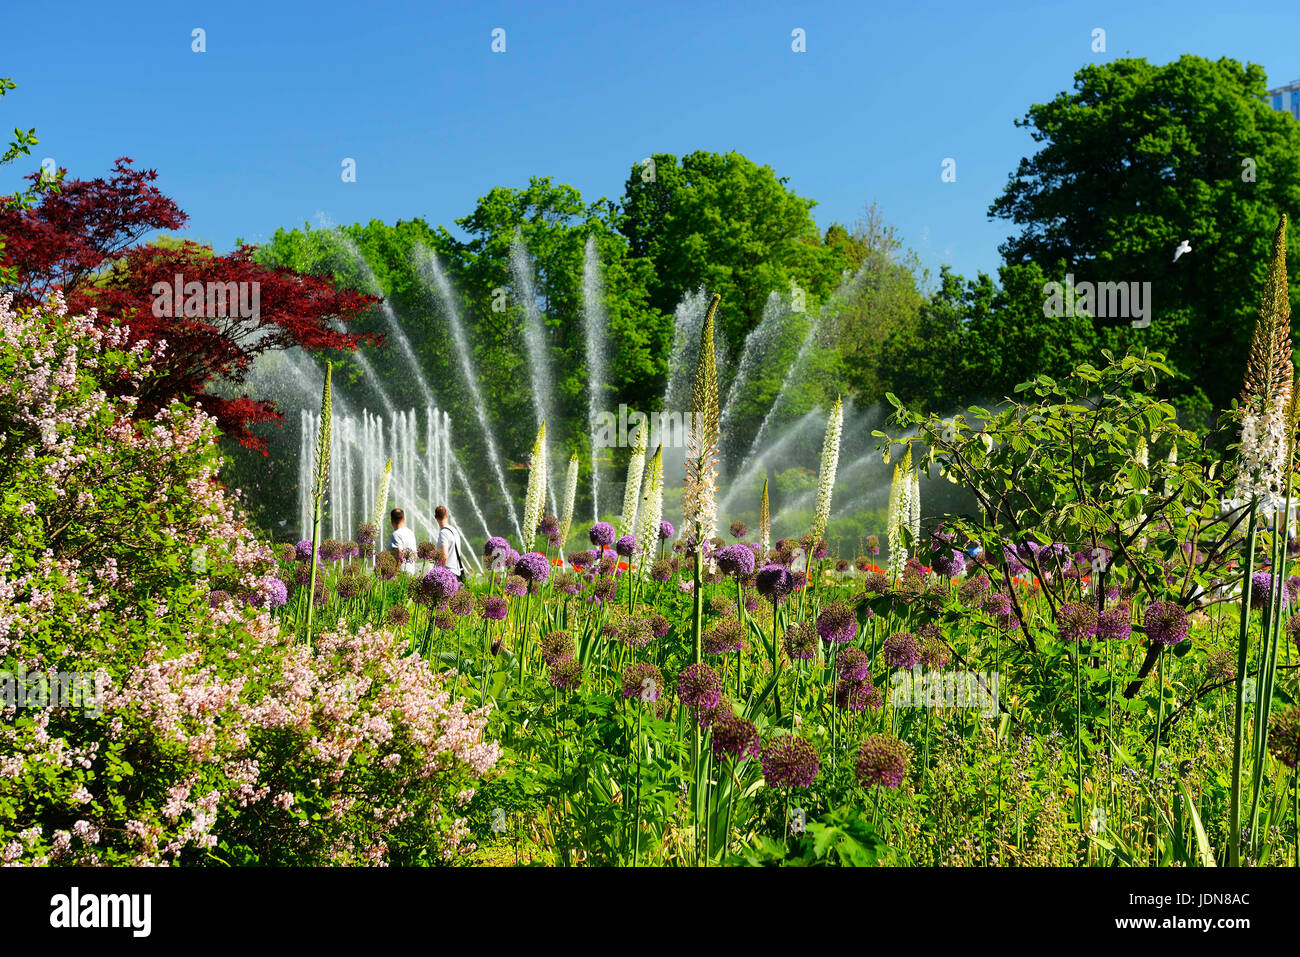 Les fontaines d'eau dans la planification du parc un Blomen à Hambourg, Allemagne, Europe, Wasserspiele im Park parc Planten un Blomen à Hambourg, Deutschland, Europa Banque D'Images